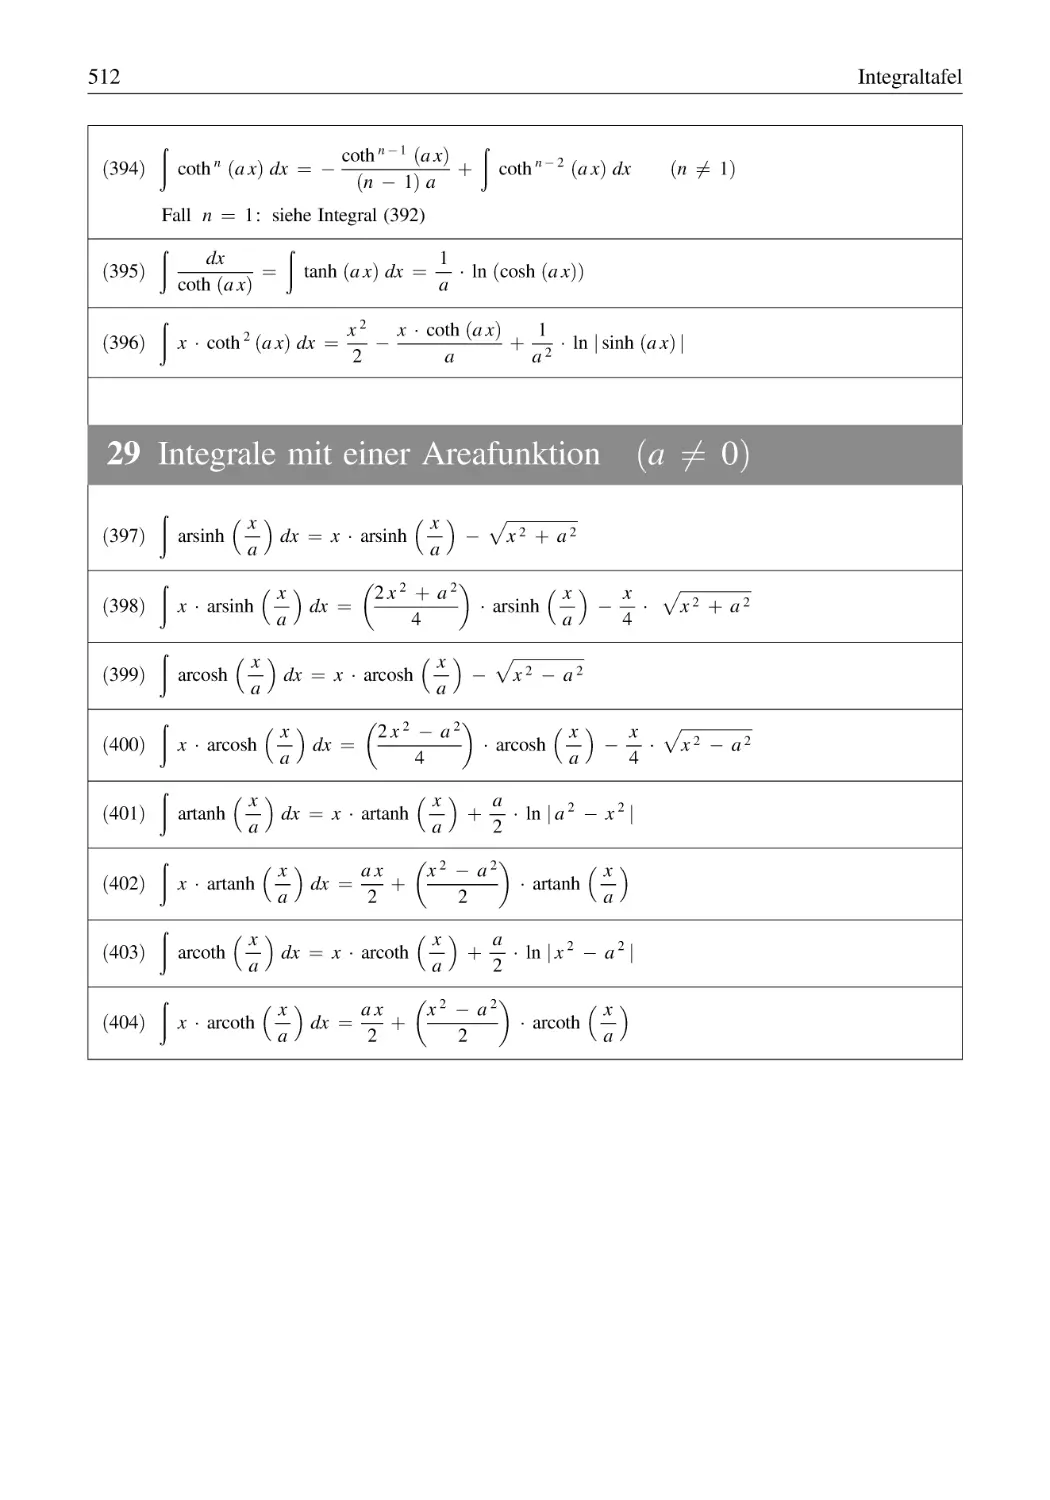 29 Integrale mit einer Areafunktion (a ≠ 0)